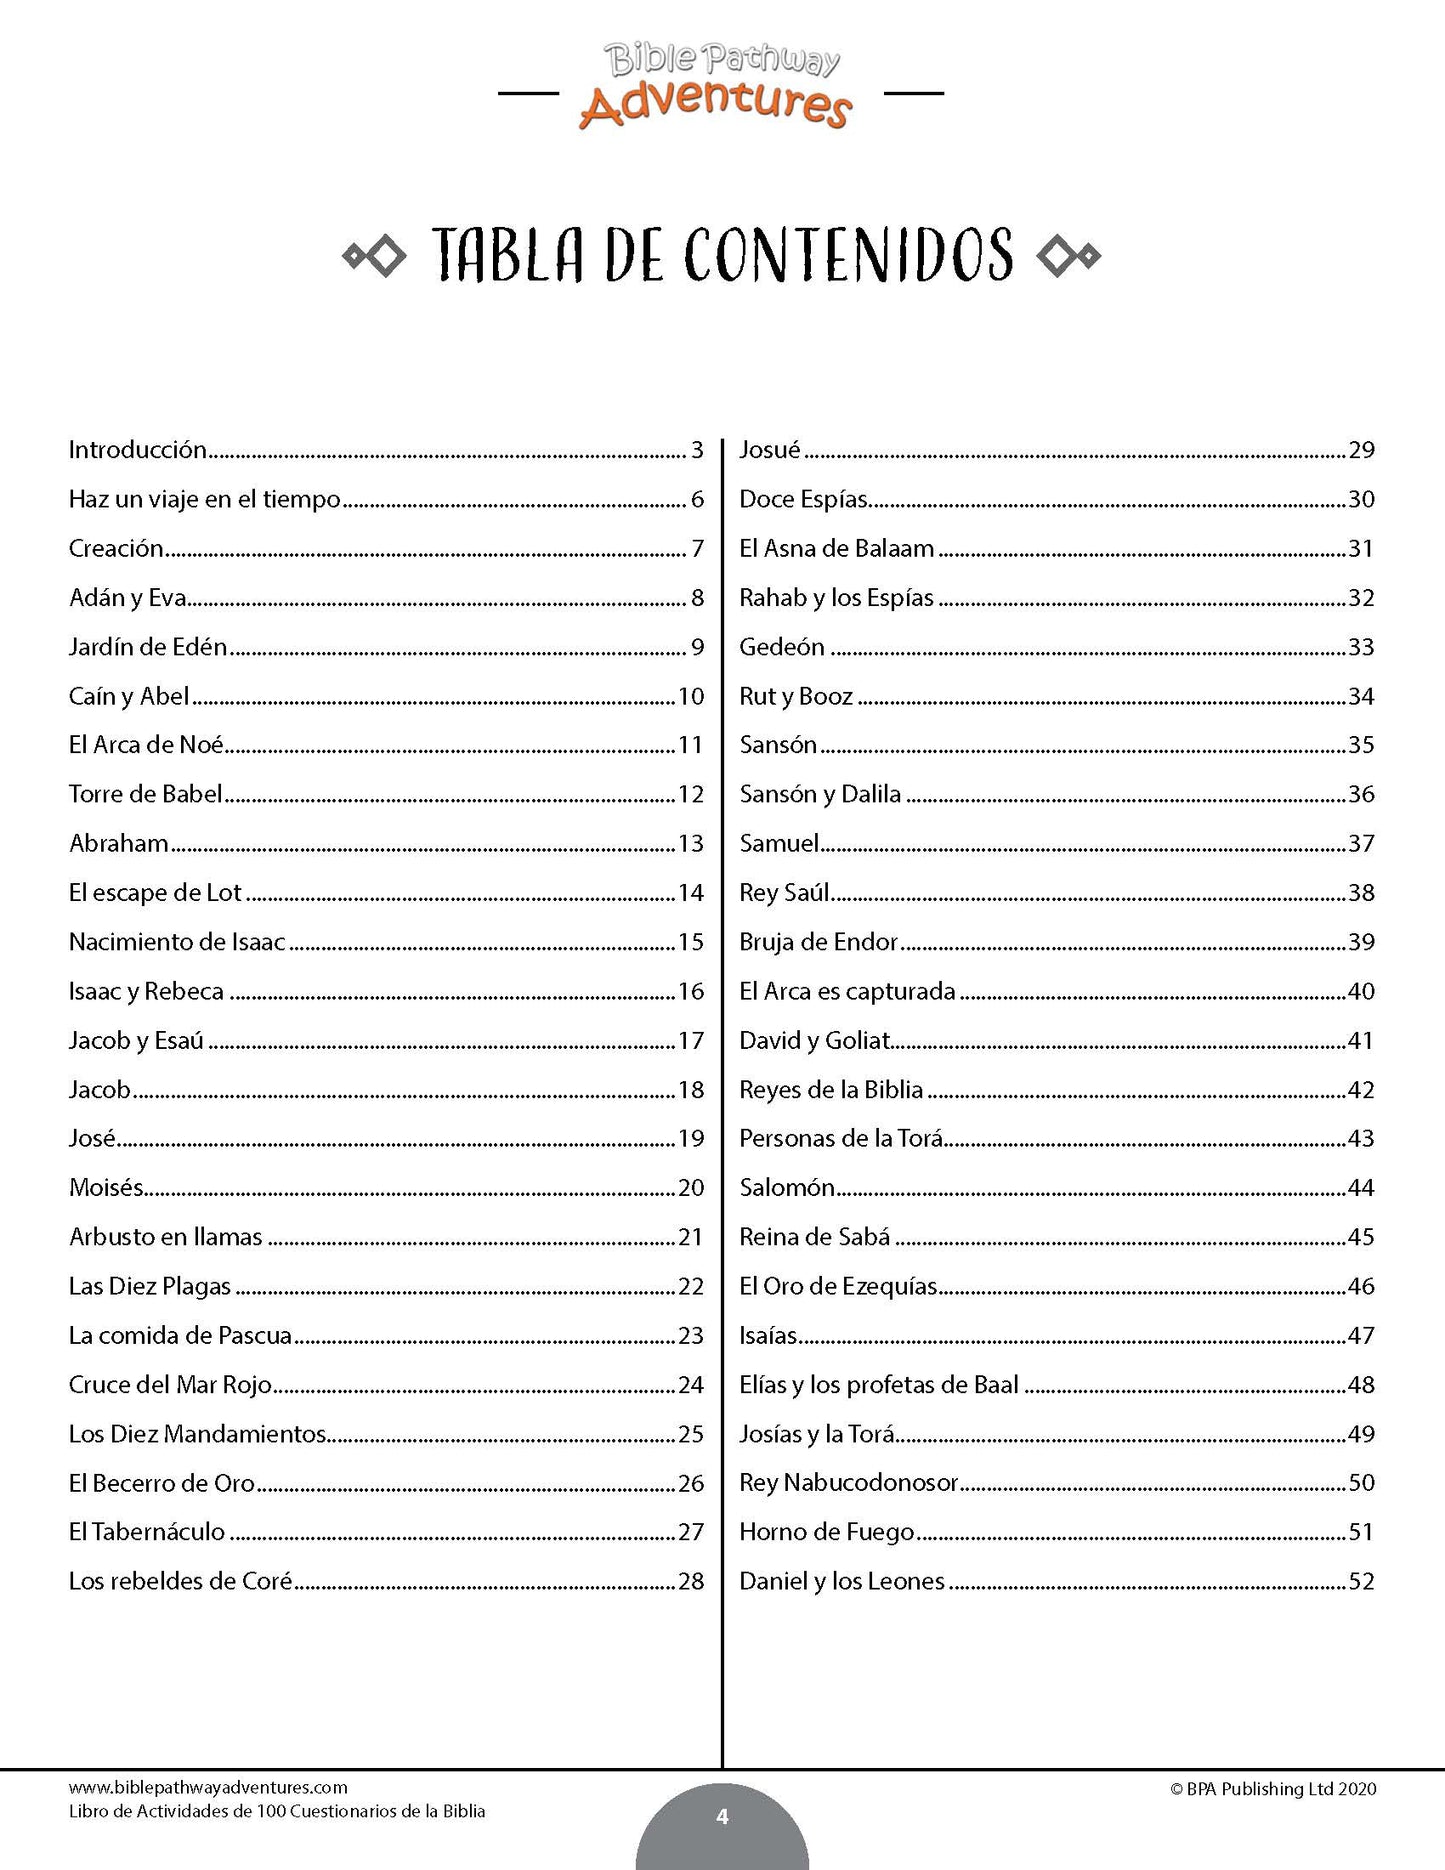 Libro de actividades de 100 cuestionarios de la Biblia